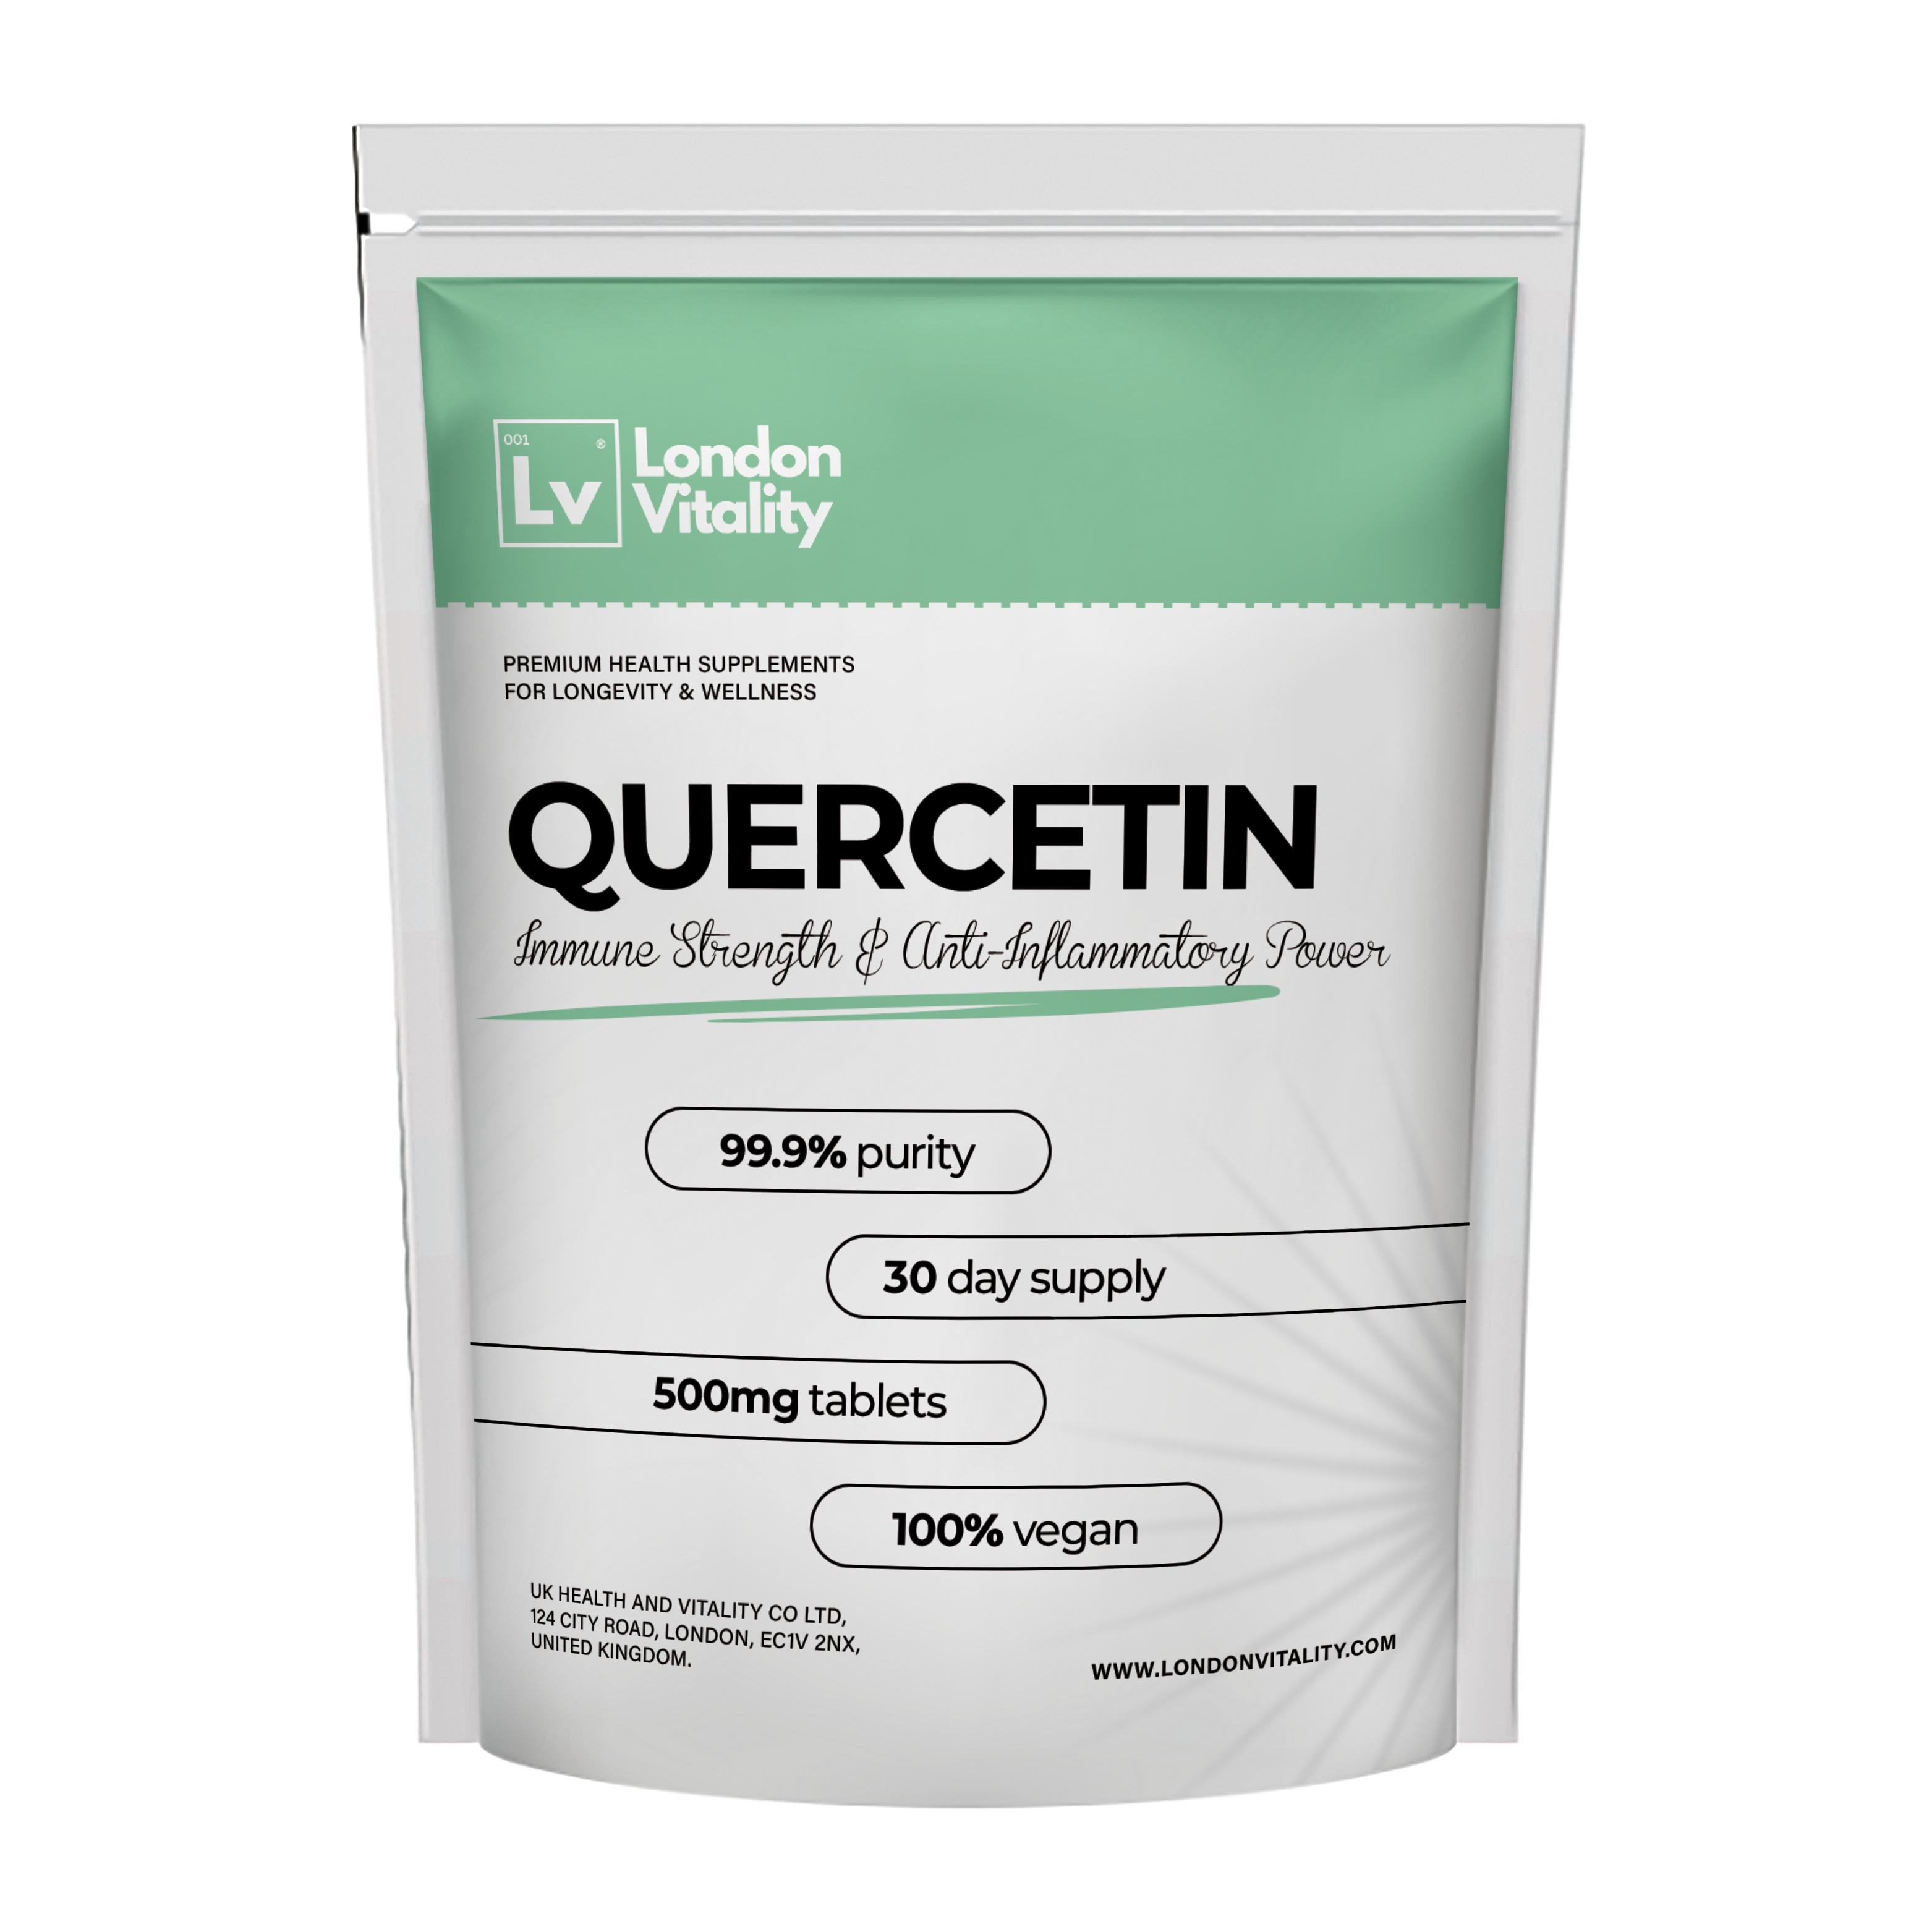 Quercetin: Immune Strength & Anti-Inflammatory Power